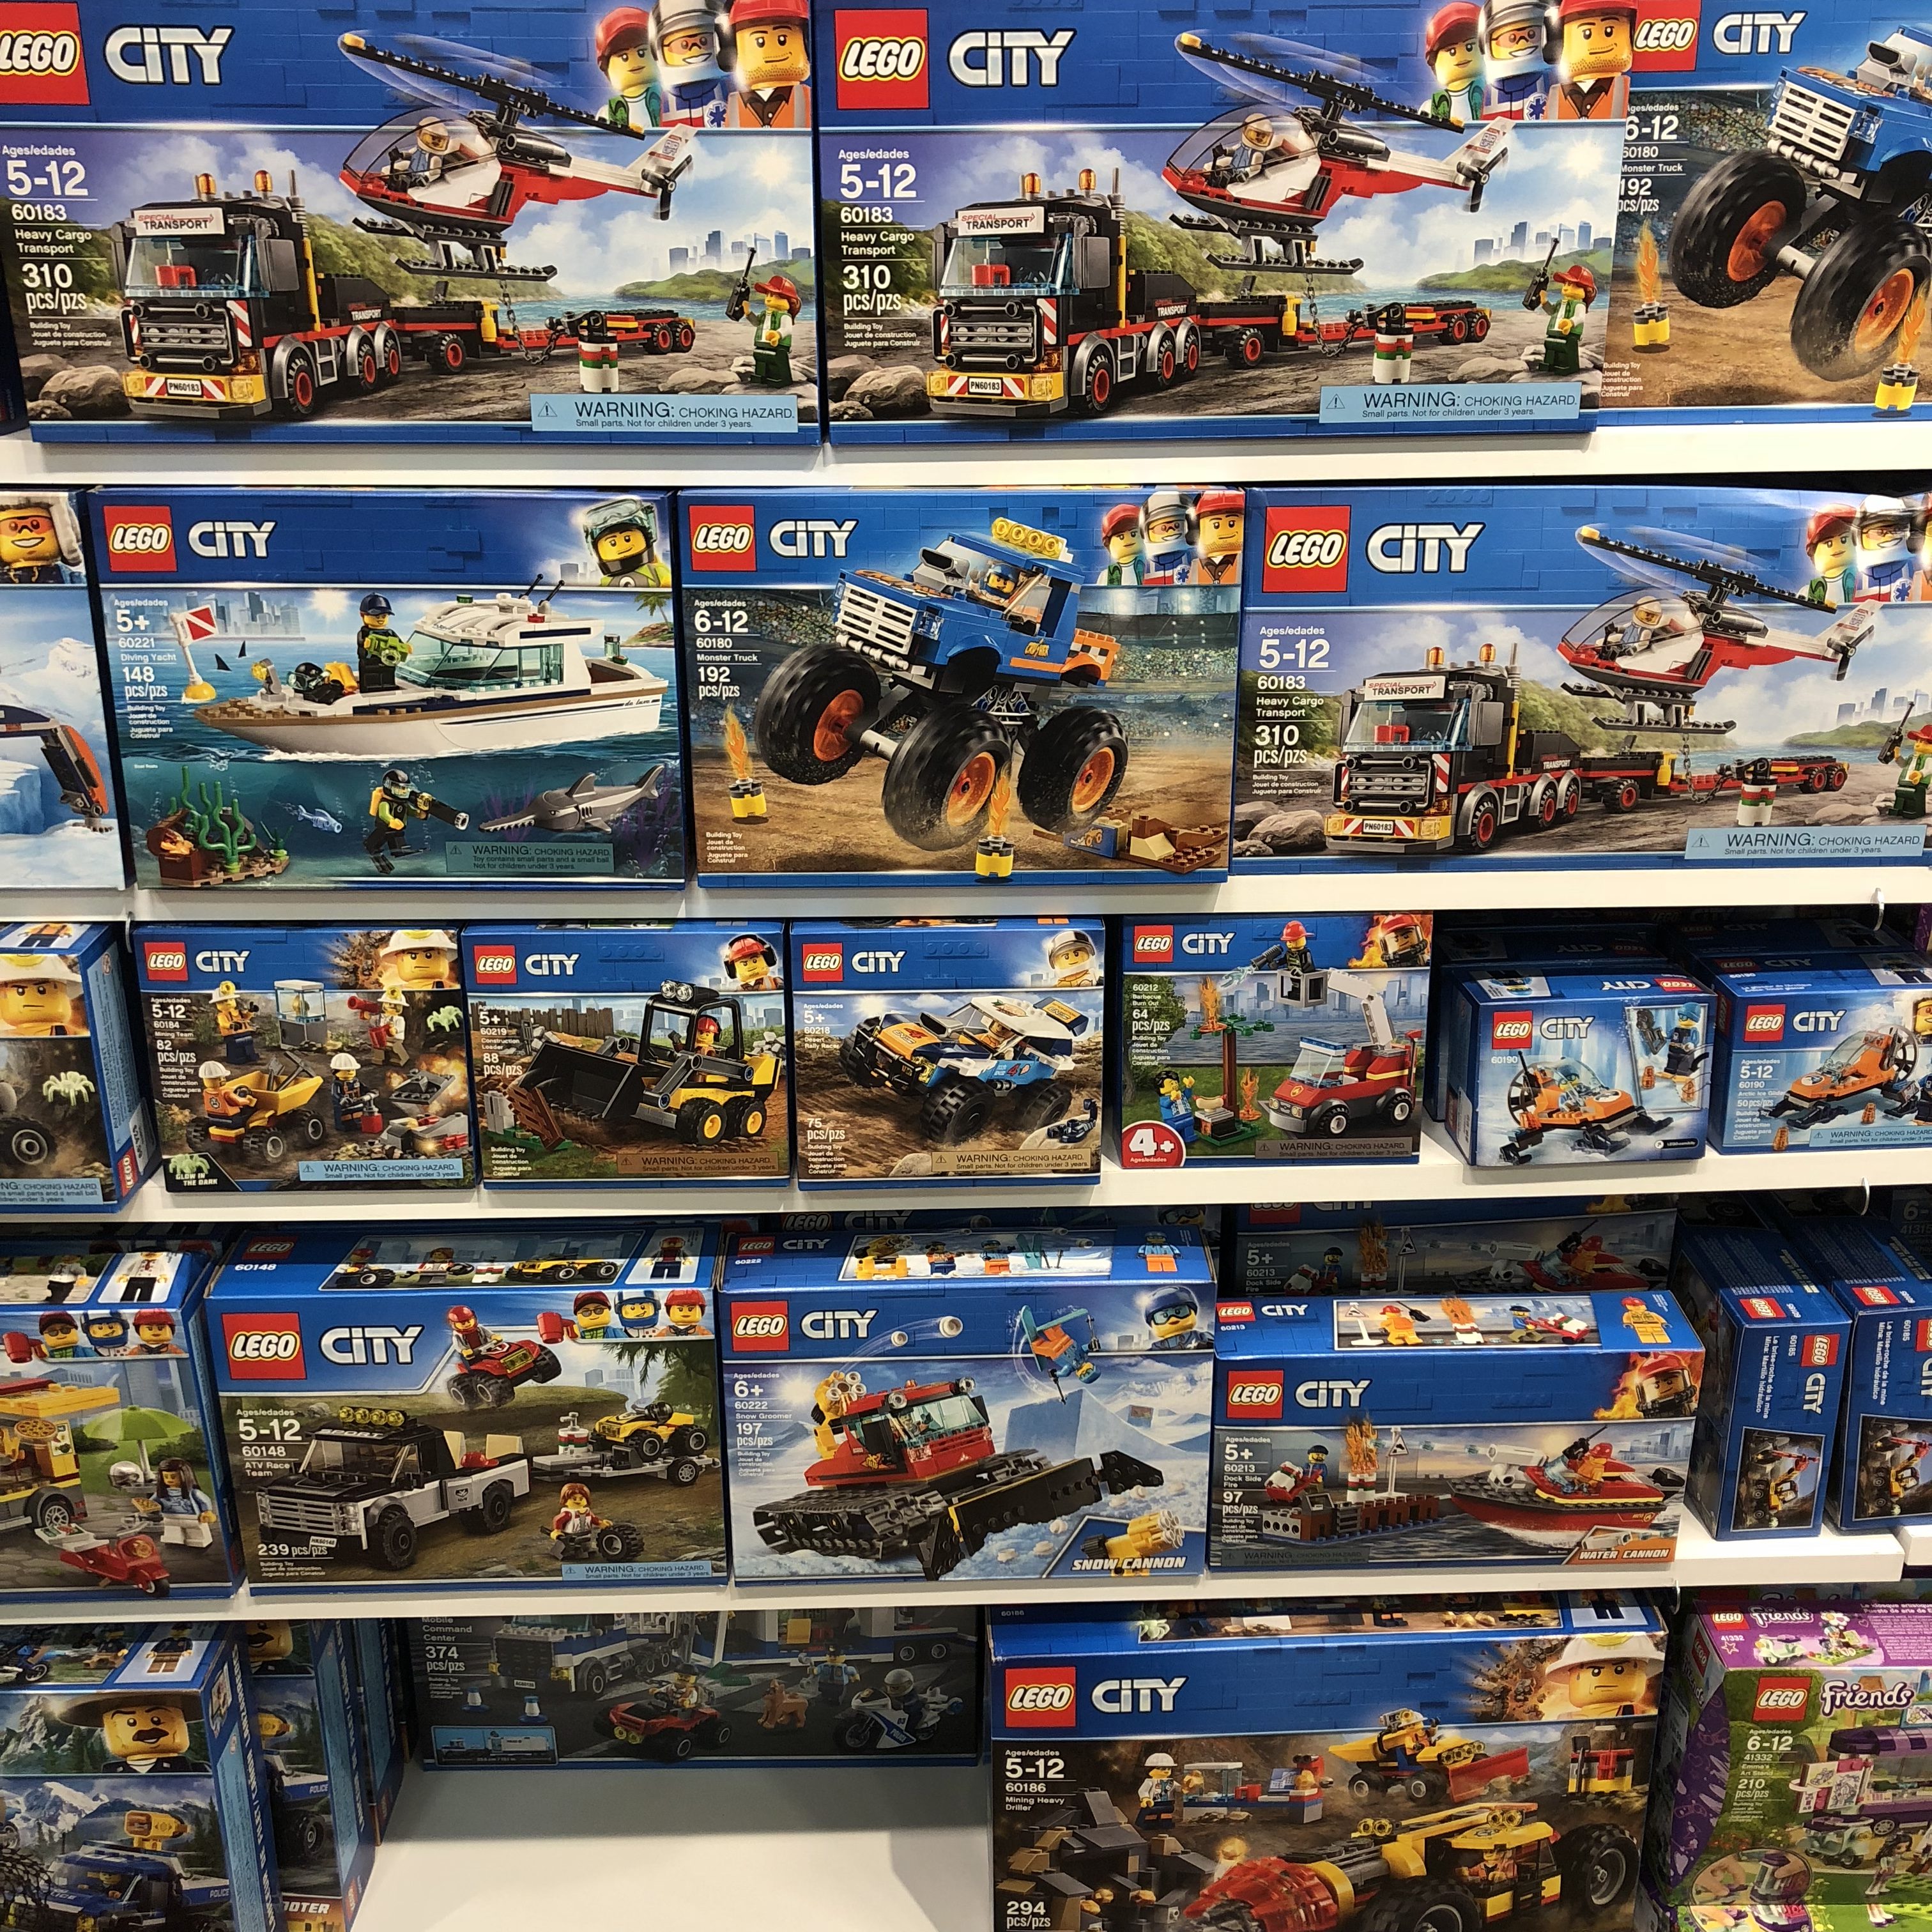 sig selv Mudret 945 2019 January LEGO City Sets Spotted - Toys N Bricks